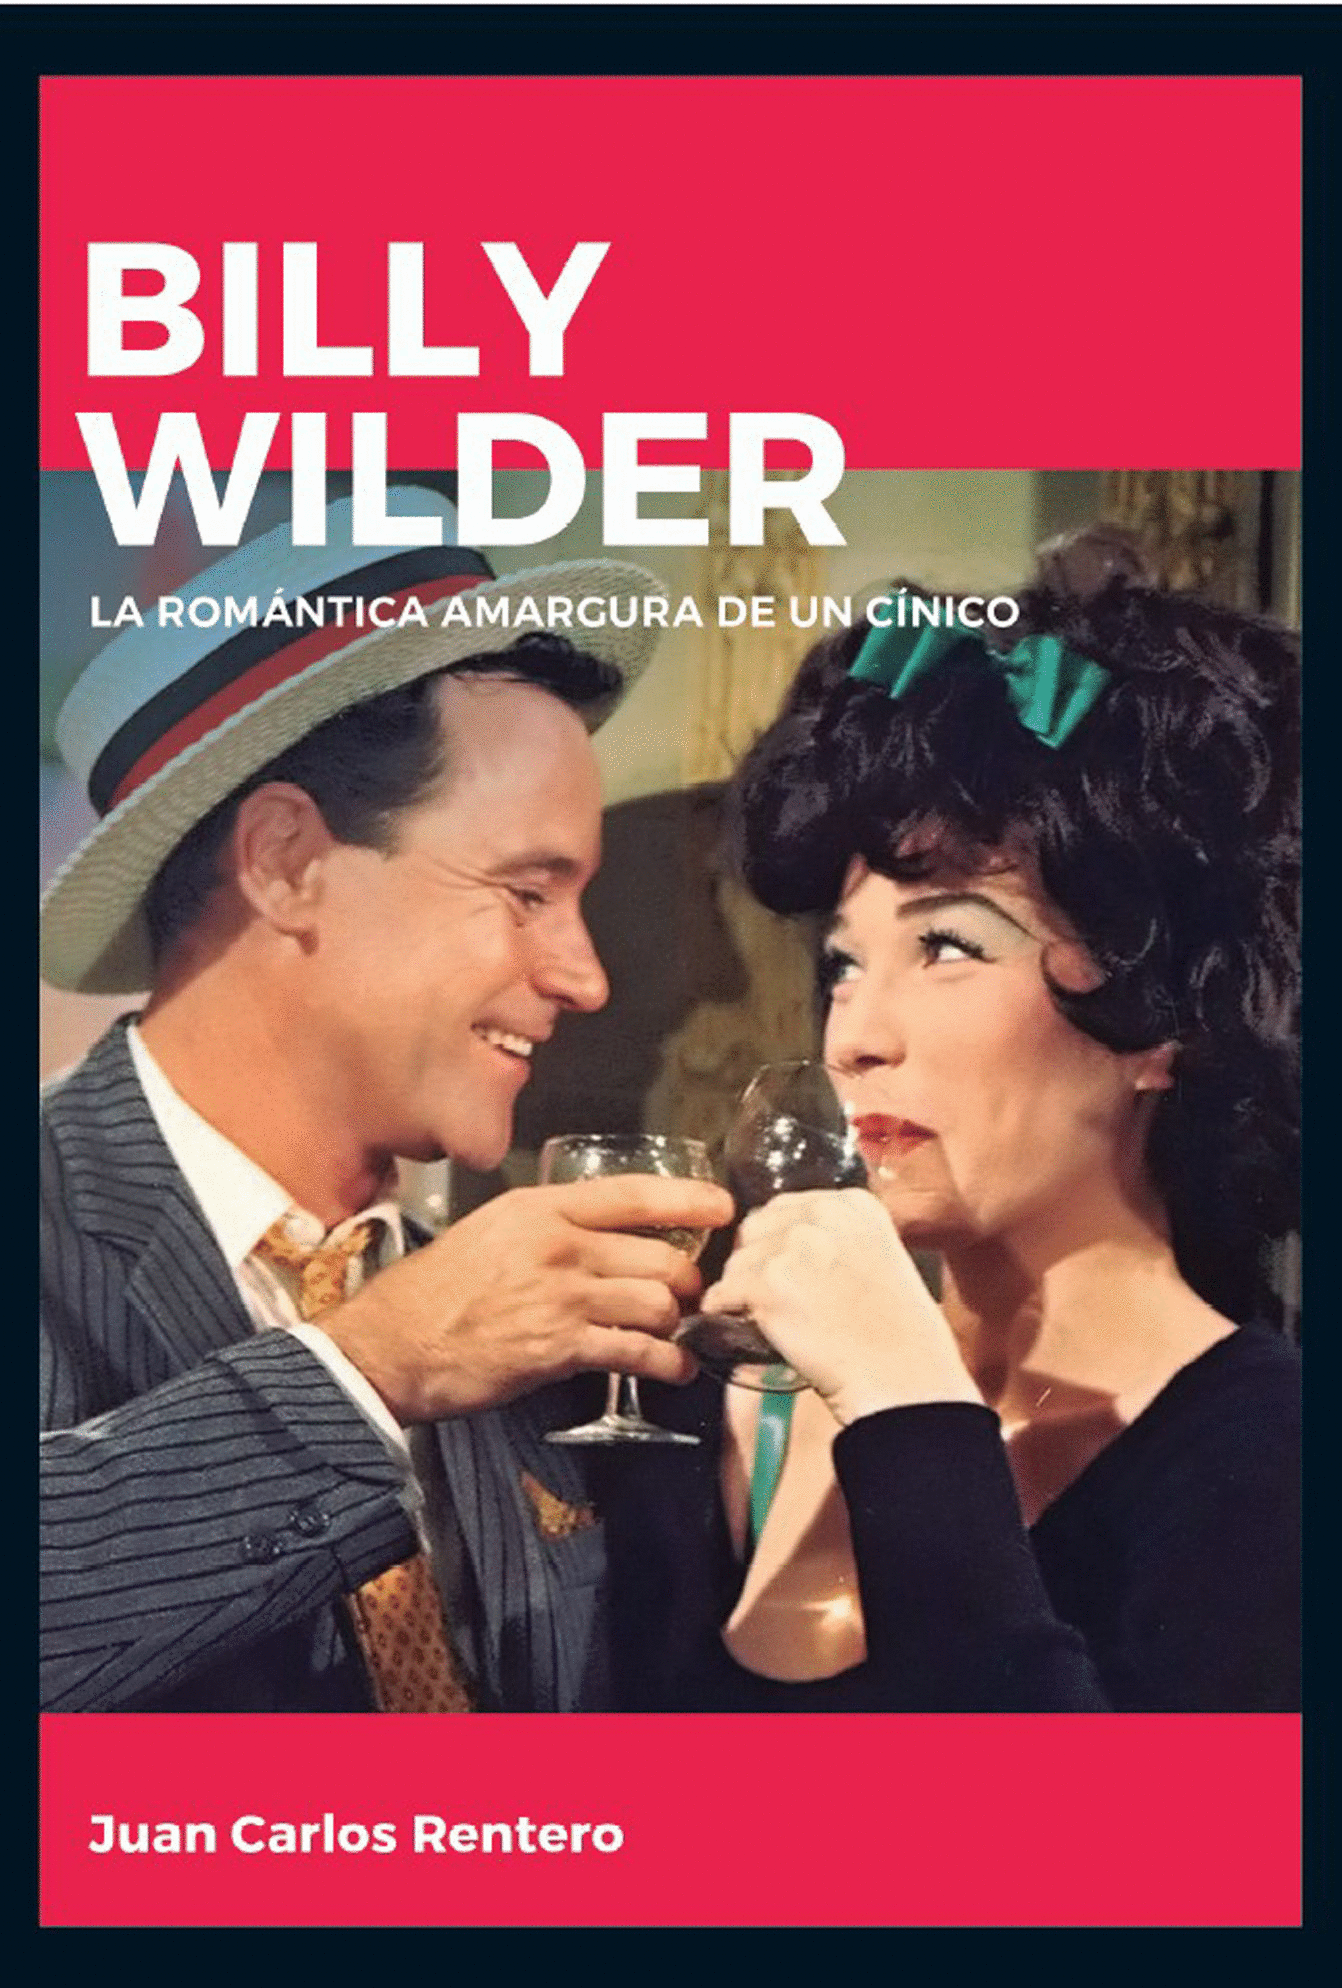 BILLY WILDER: LA ROMANTICA AMARGURA DE UN CINICO